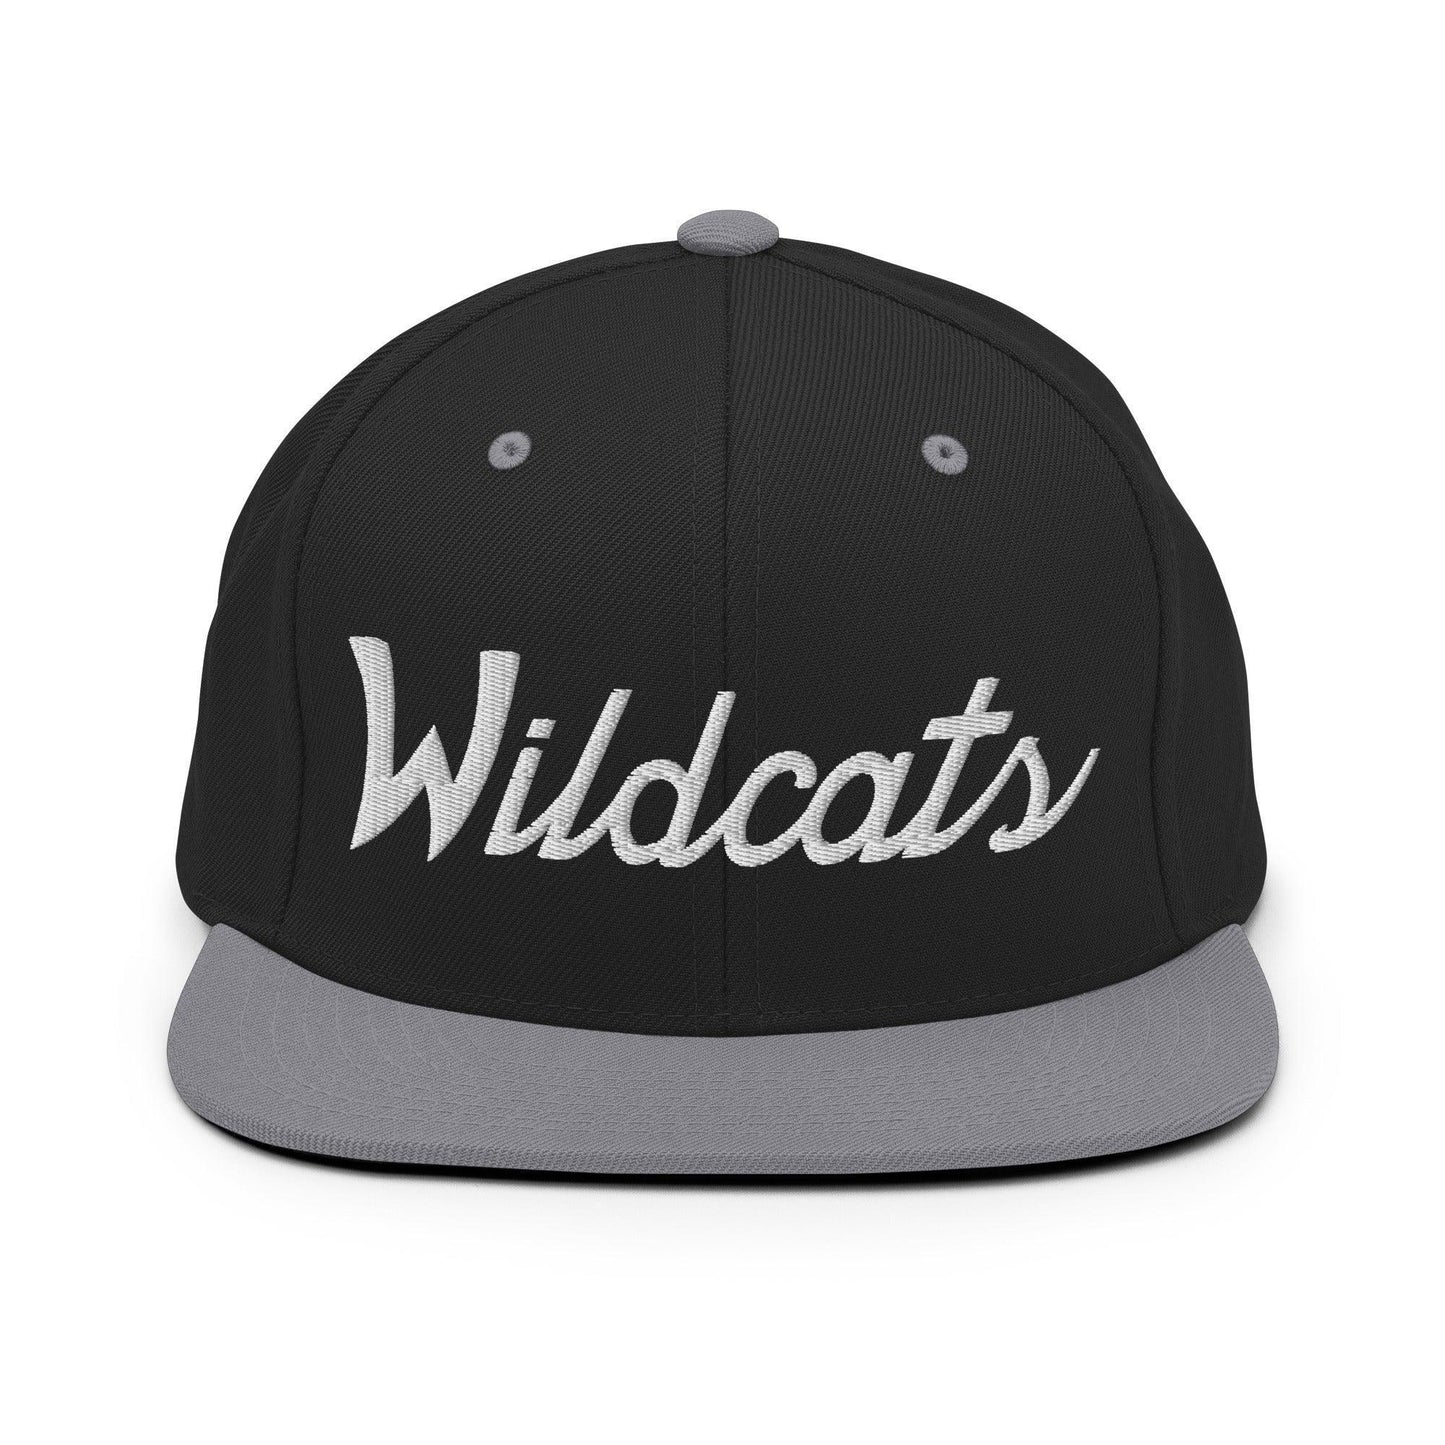 Wildcats School Mascot Script Snapback Hat Black/ Silver